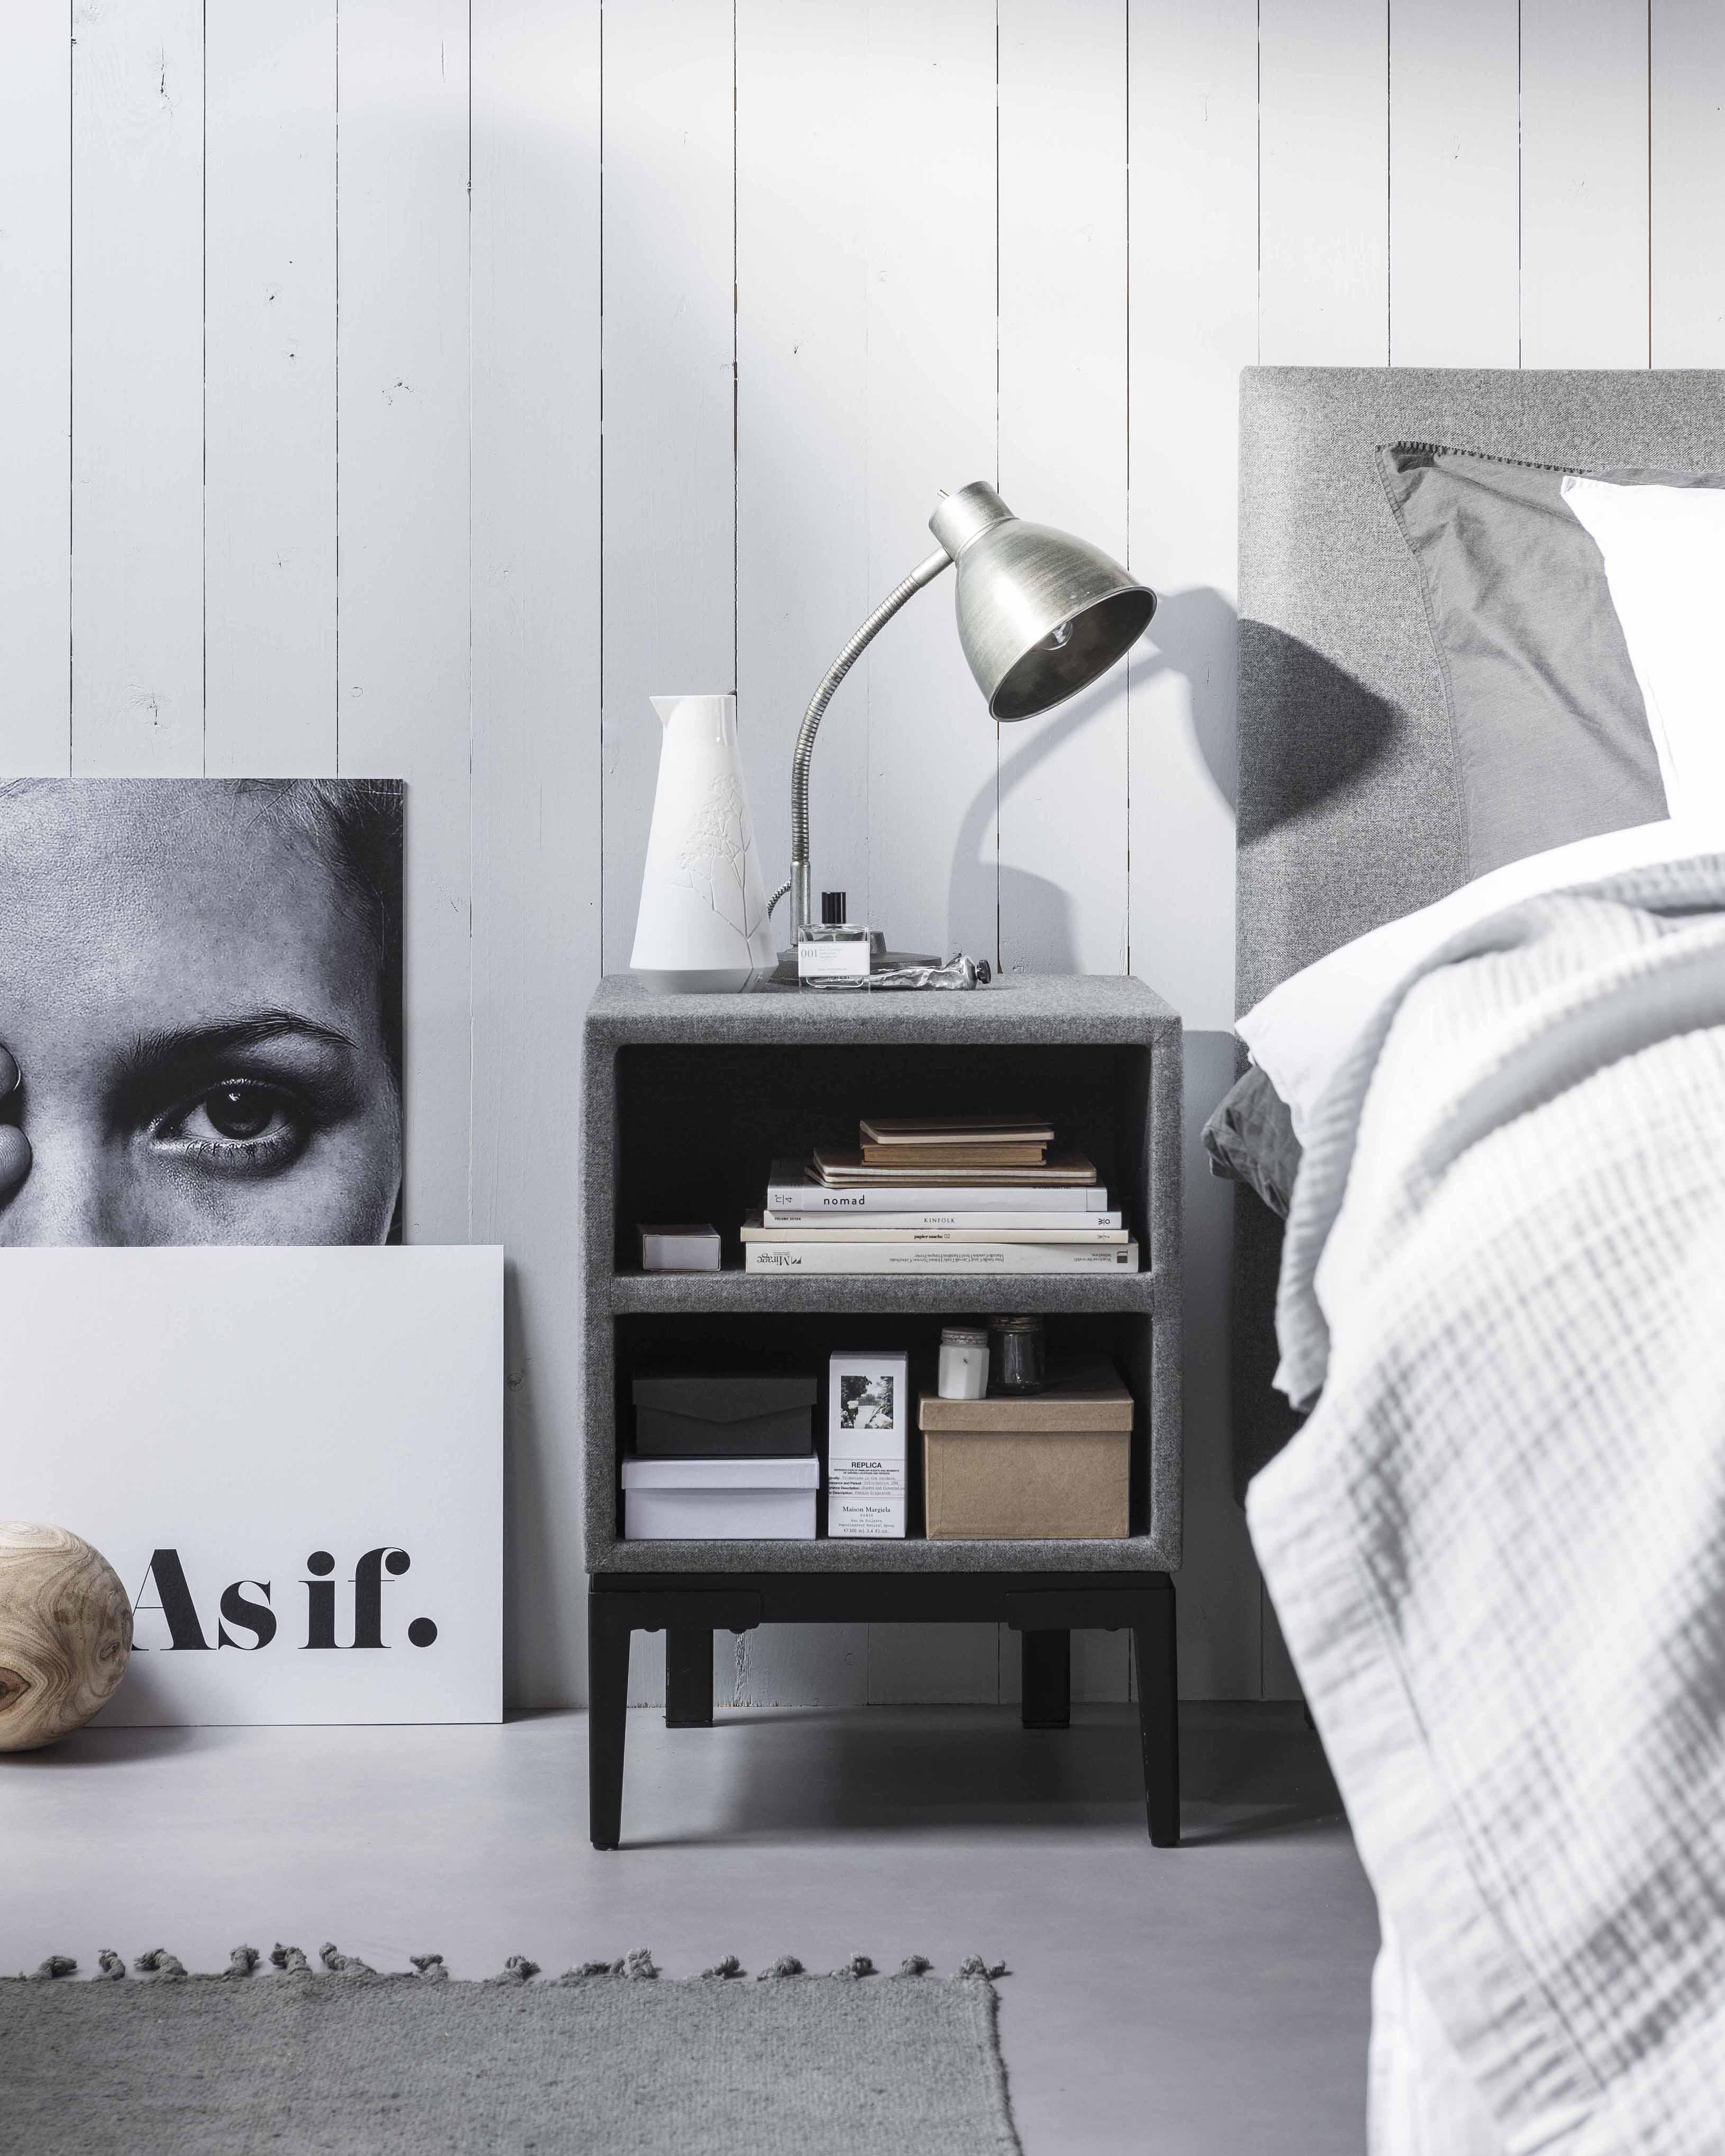 Typisch Blootstellen kussen Swiss Sense introduceert nieuwe collectie met vtwonen - bed - slaapkamer -  WONEN.nl